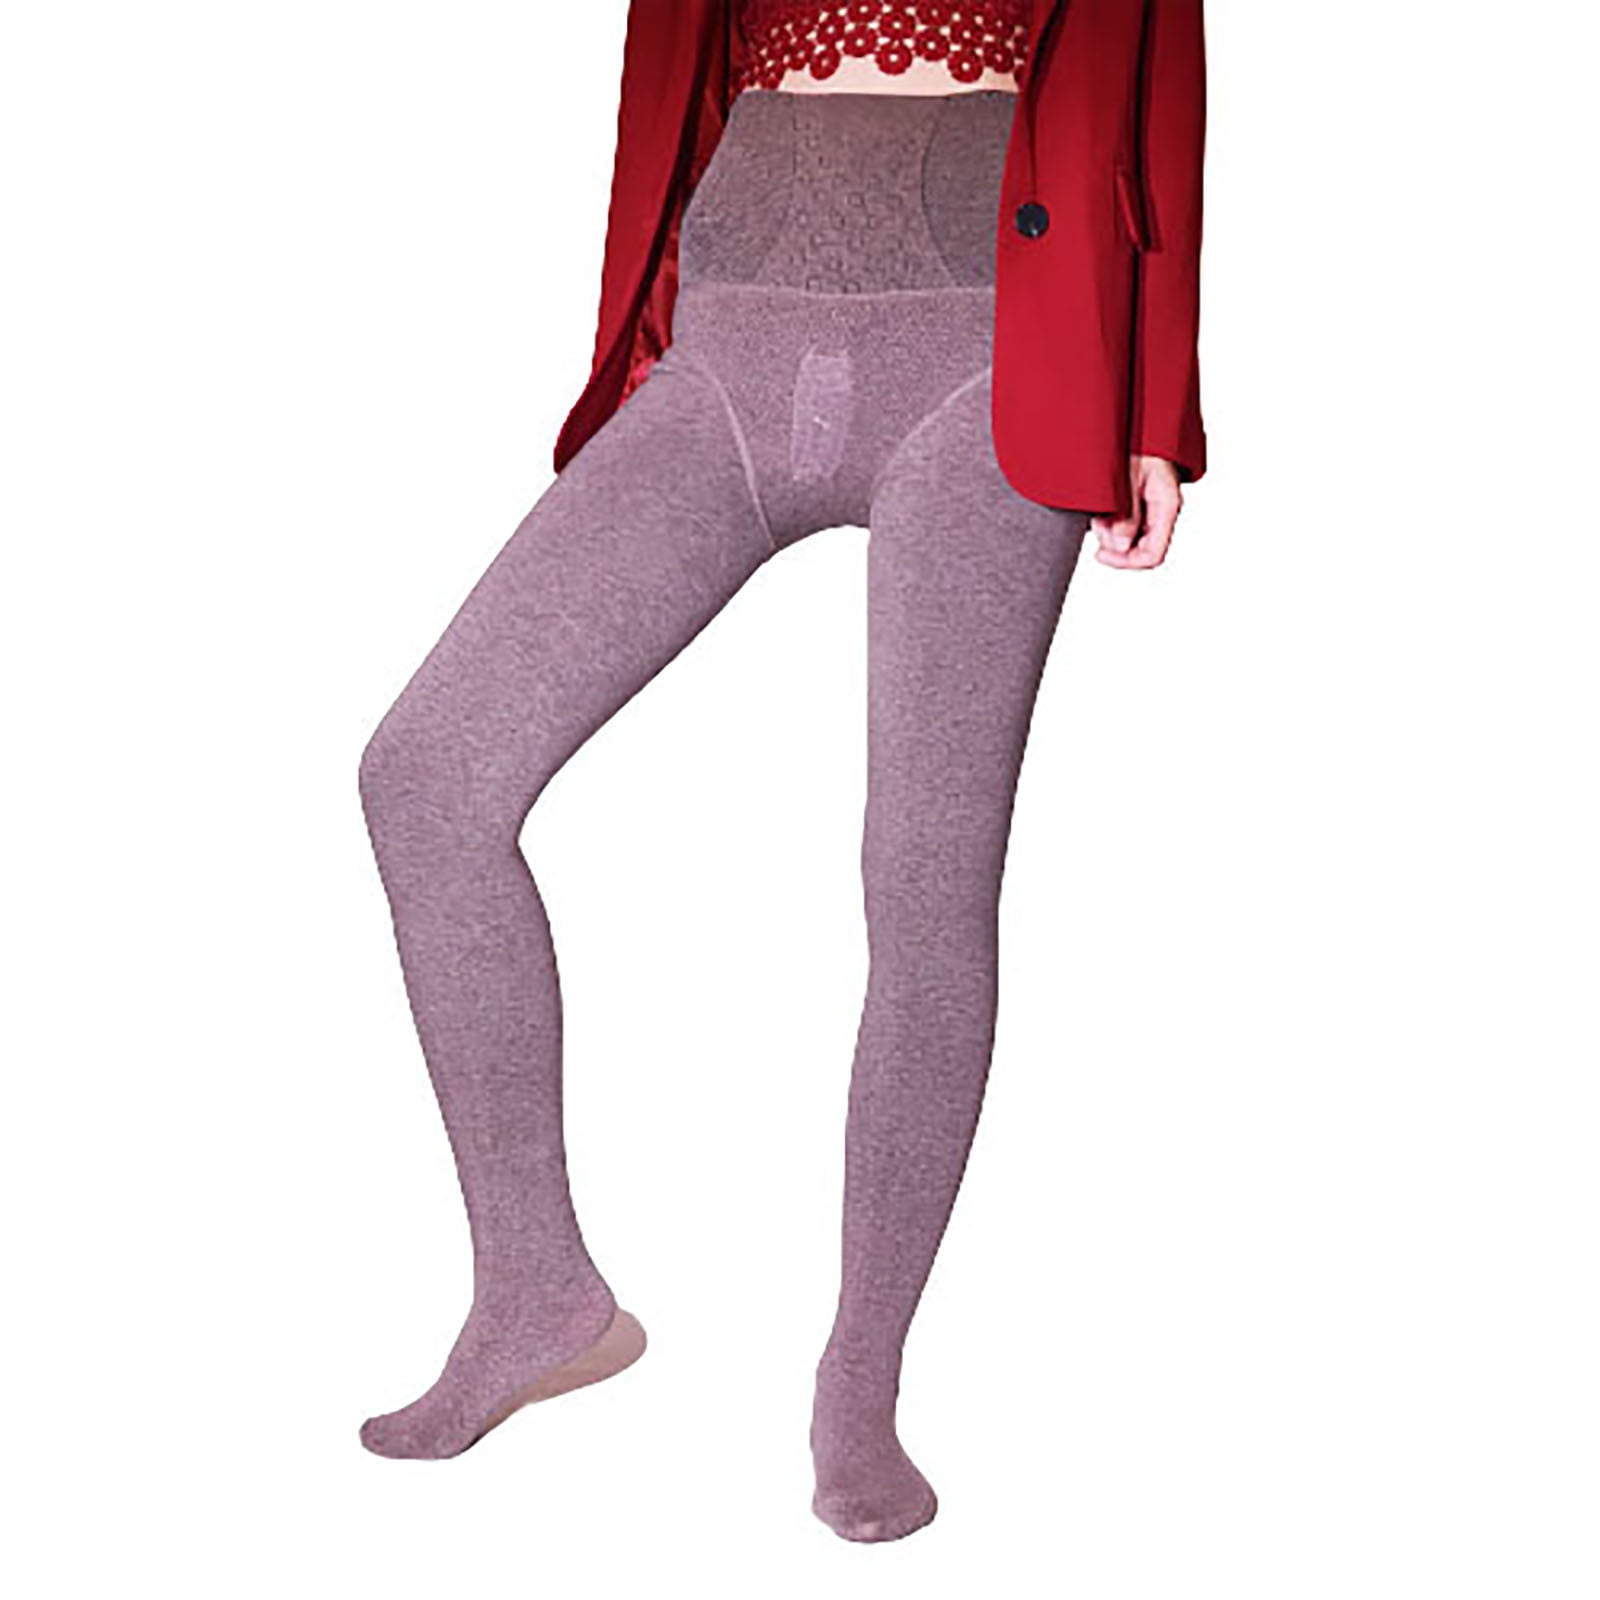 6 Pairs Women Fishnet Stockings Thigh High Stockings Garter Stockings  Suspender Pantyhose Stocking Women Lingerie